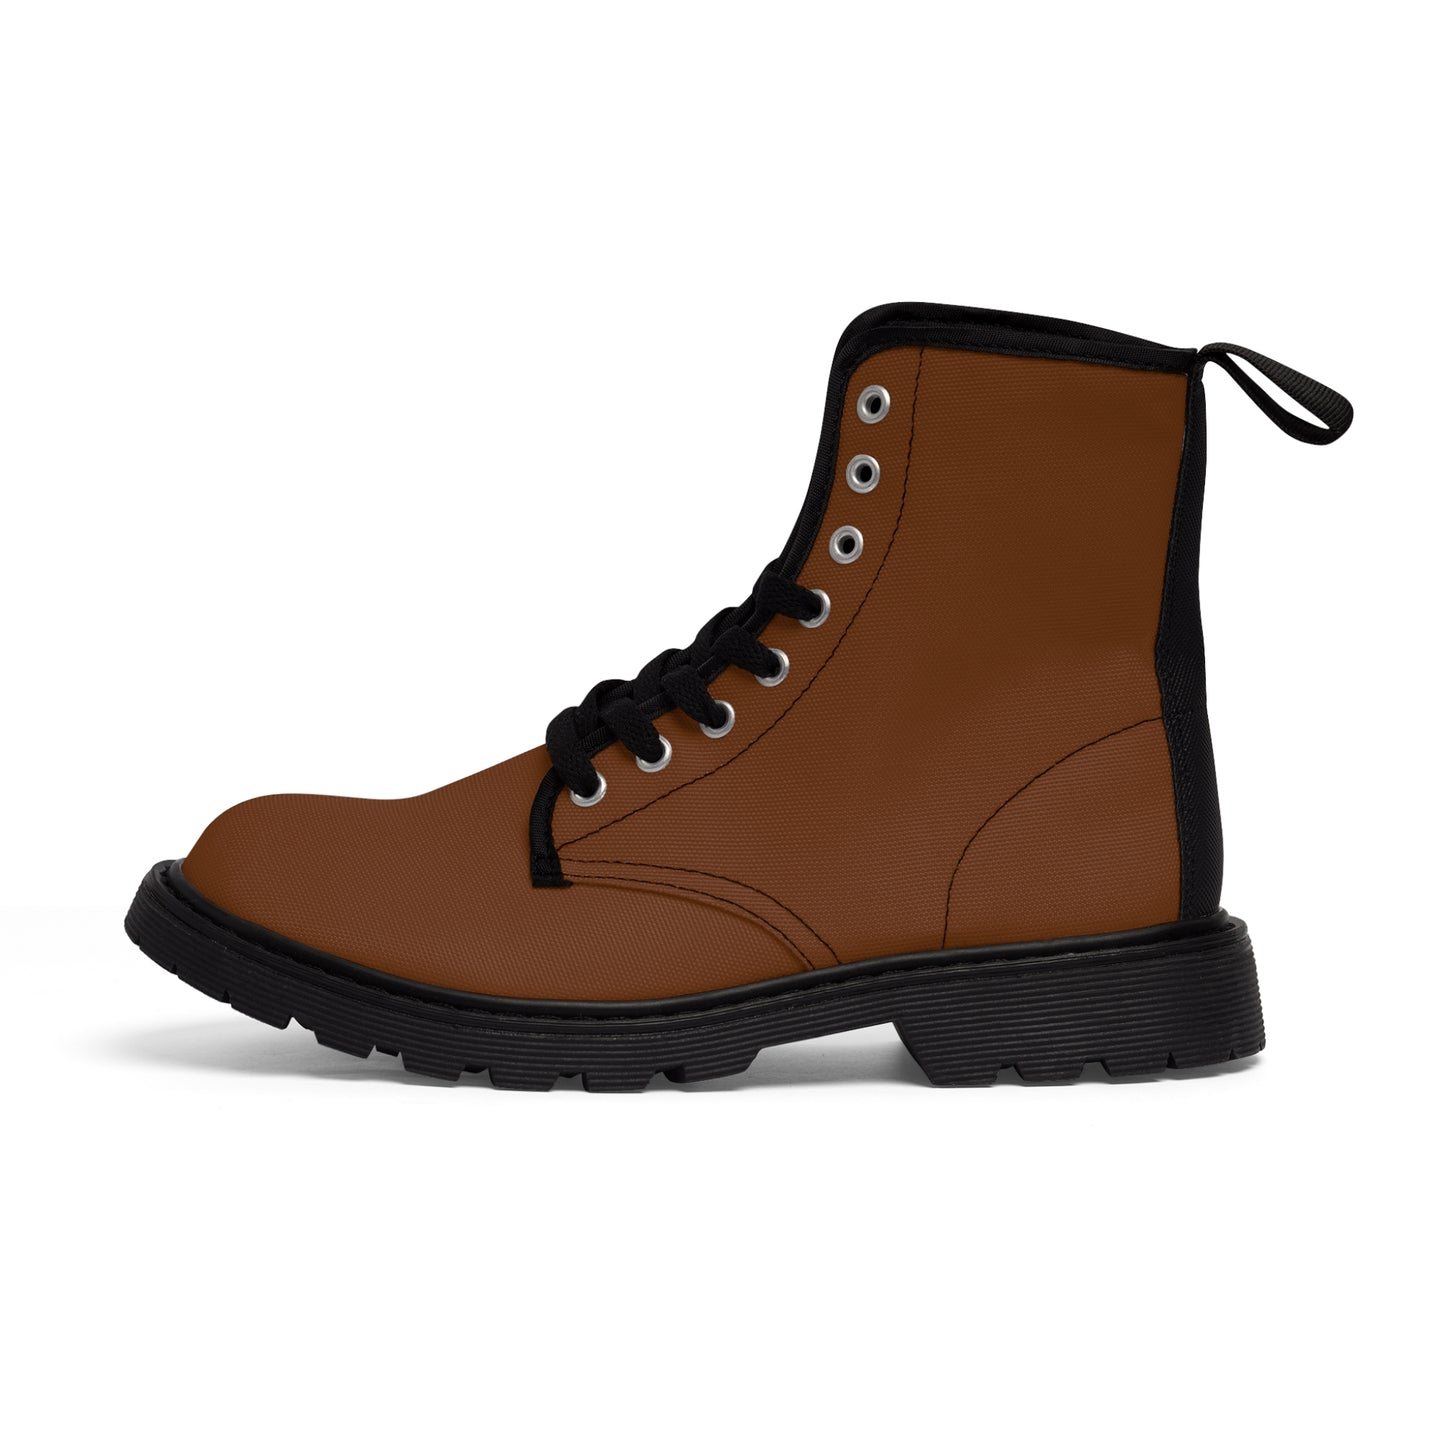 Men's Canvas Boots - Rotten Orange US 10.5 Black sole